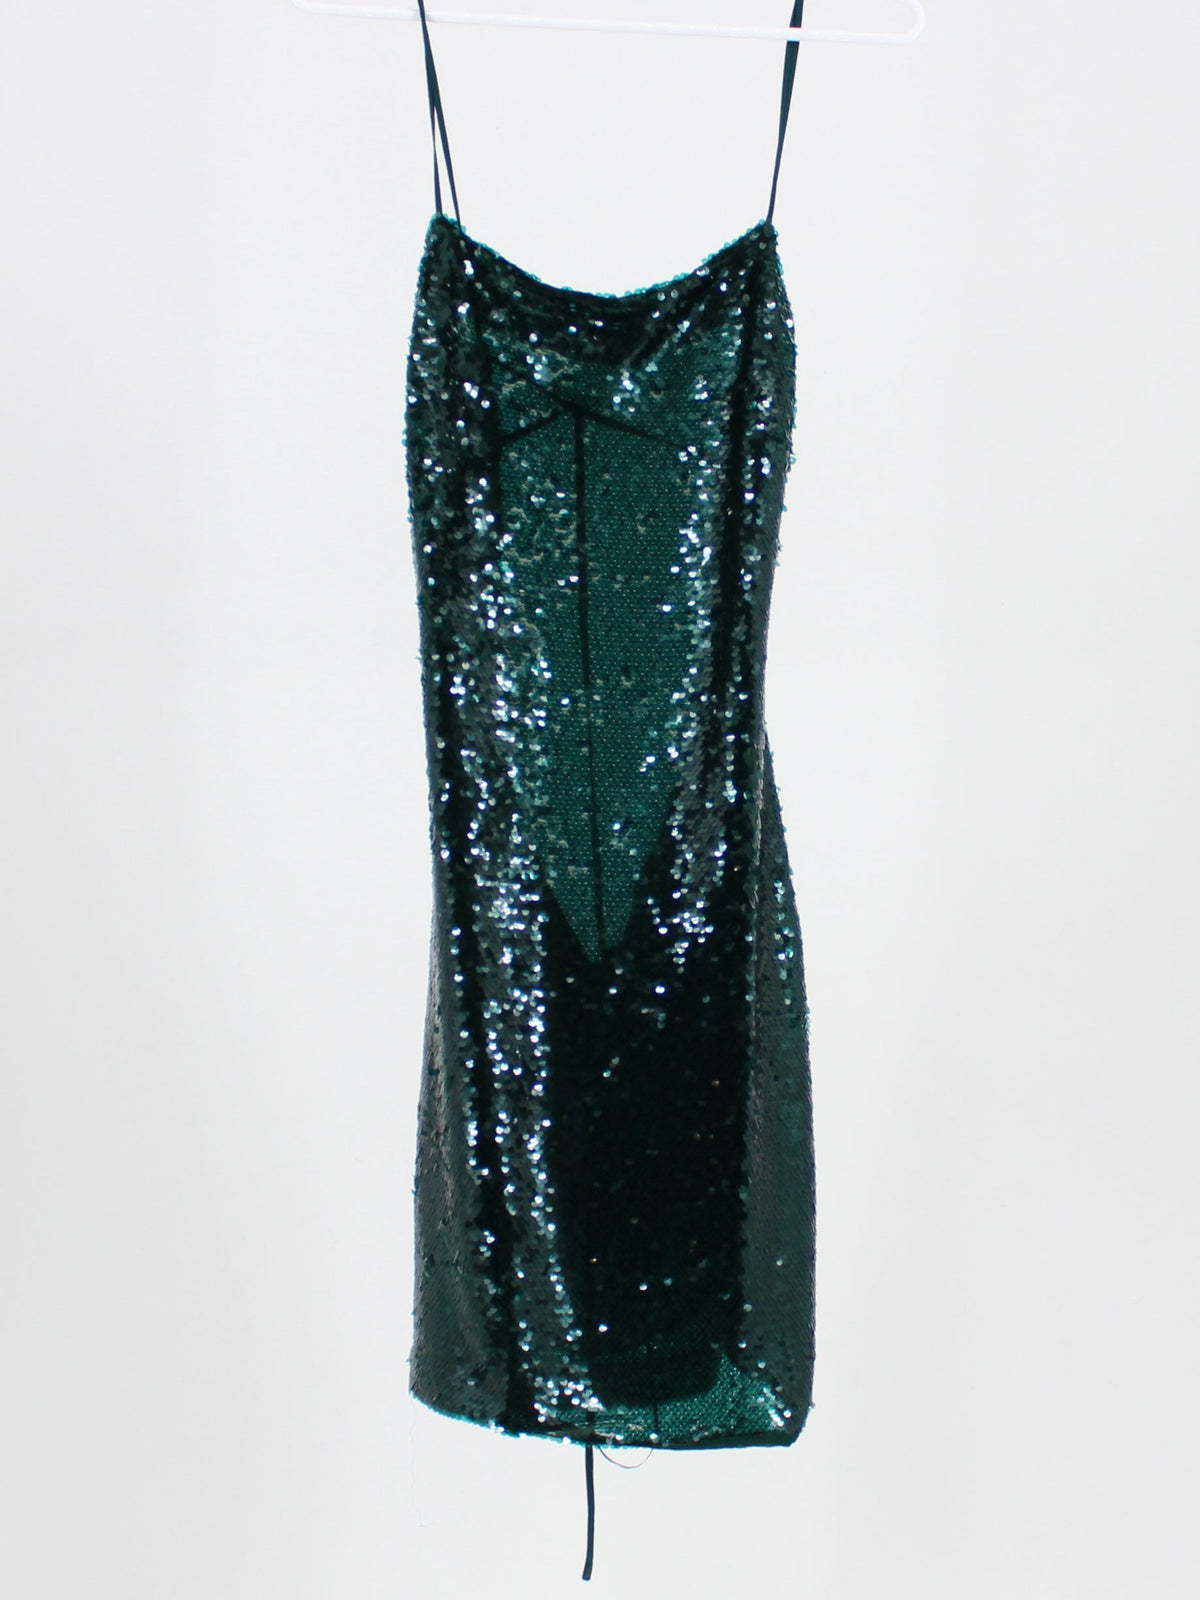 Zara Emerald Green Sequin Backless Dress